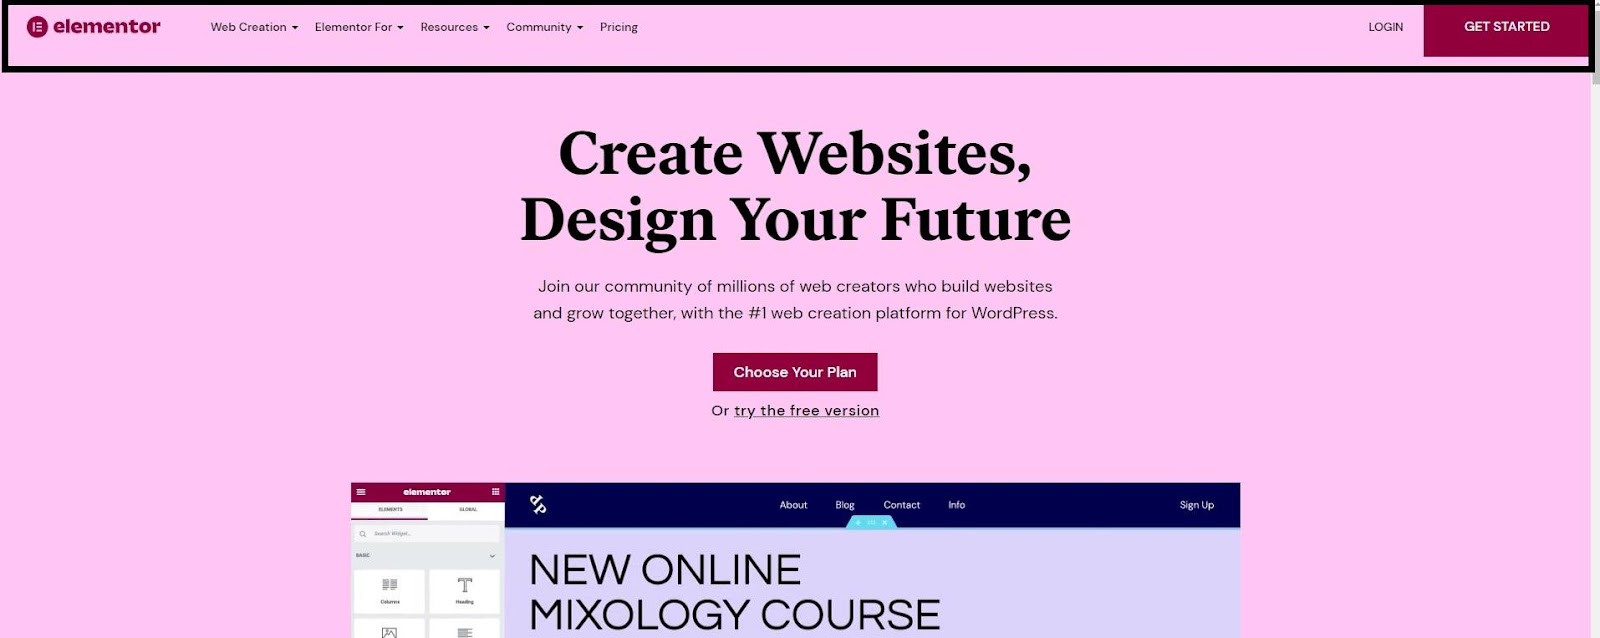 Elementor 网站的屏幕截图，标题在顶部突出显示。